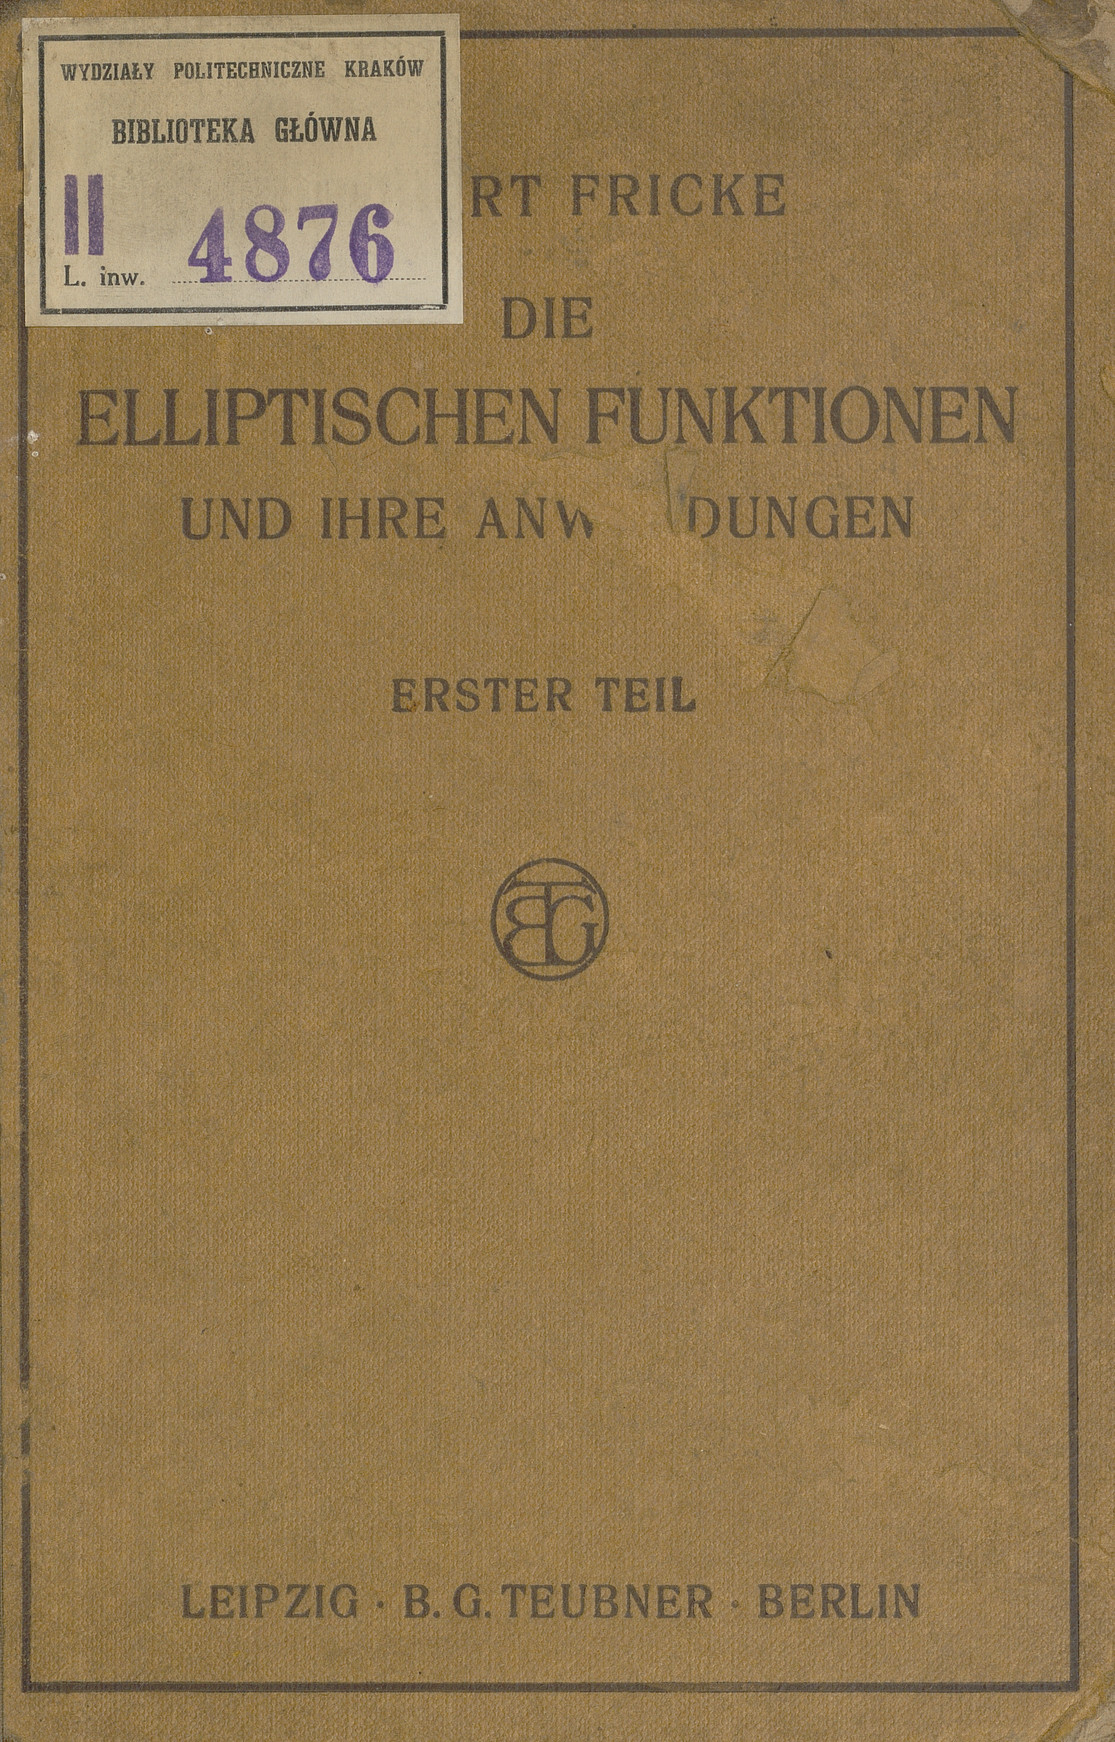 Die elliptischen Funktionen und ihre Anwendungen. T. 1, Die funktionentheoretischen und analytischen Grundlagen